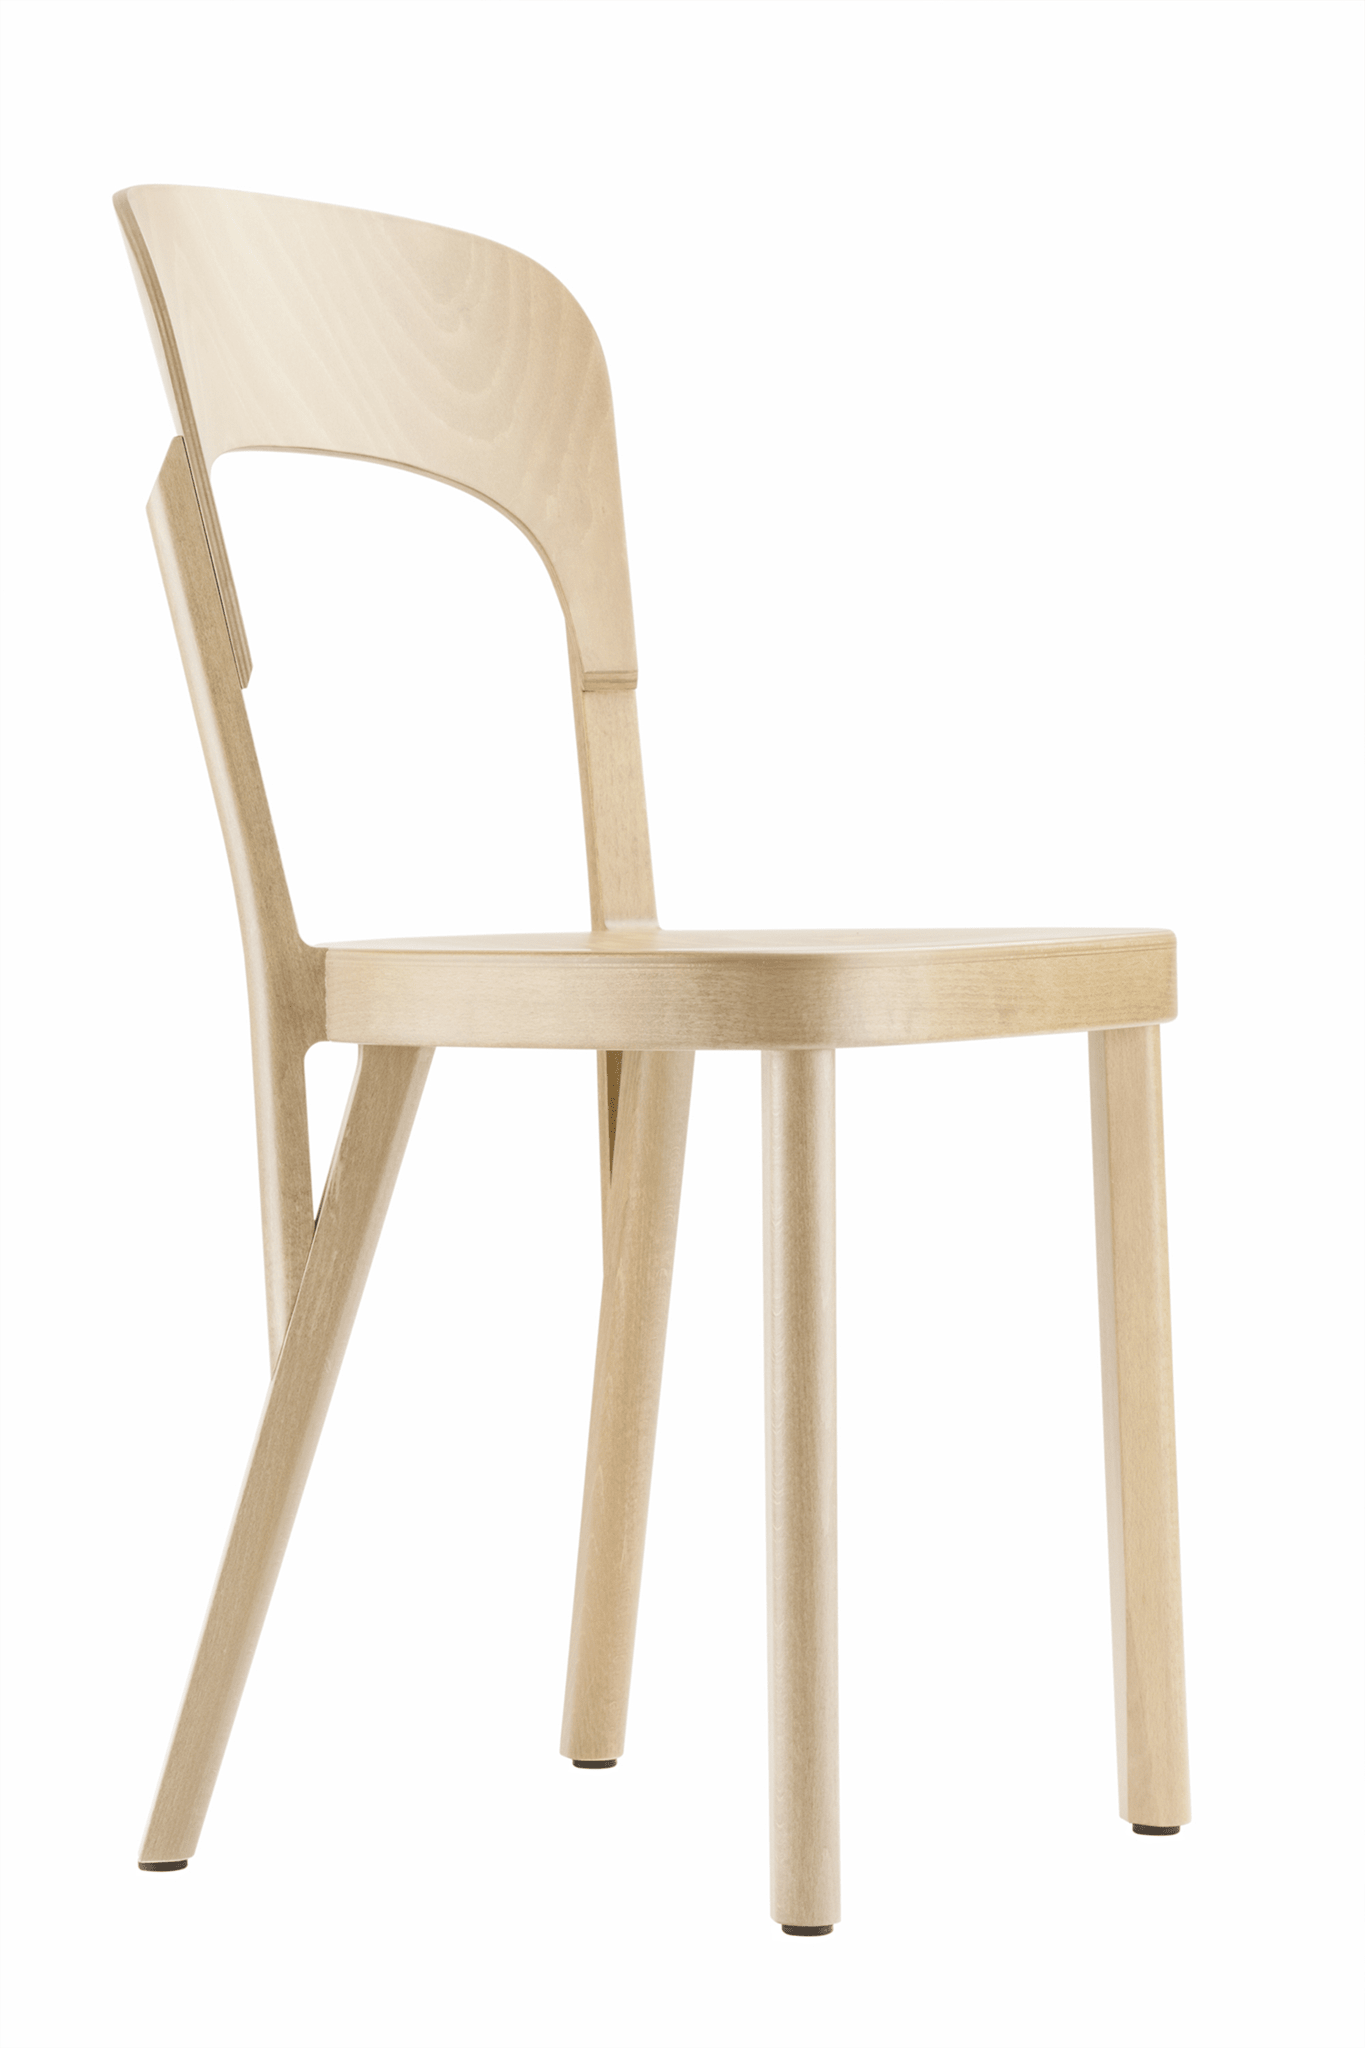 लकड़ी की कुर्सी 107 की तस्वीर